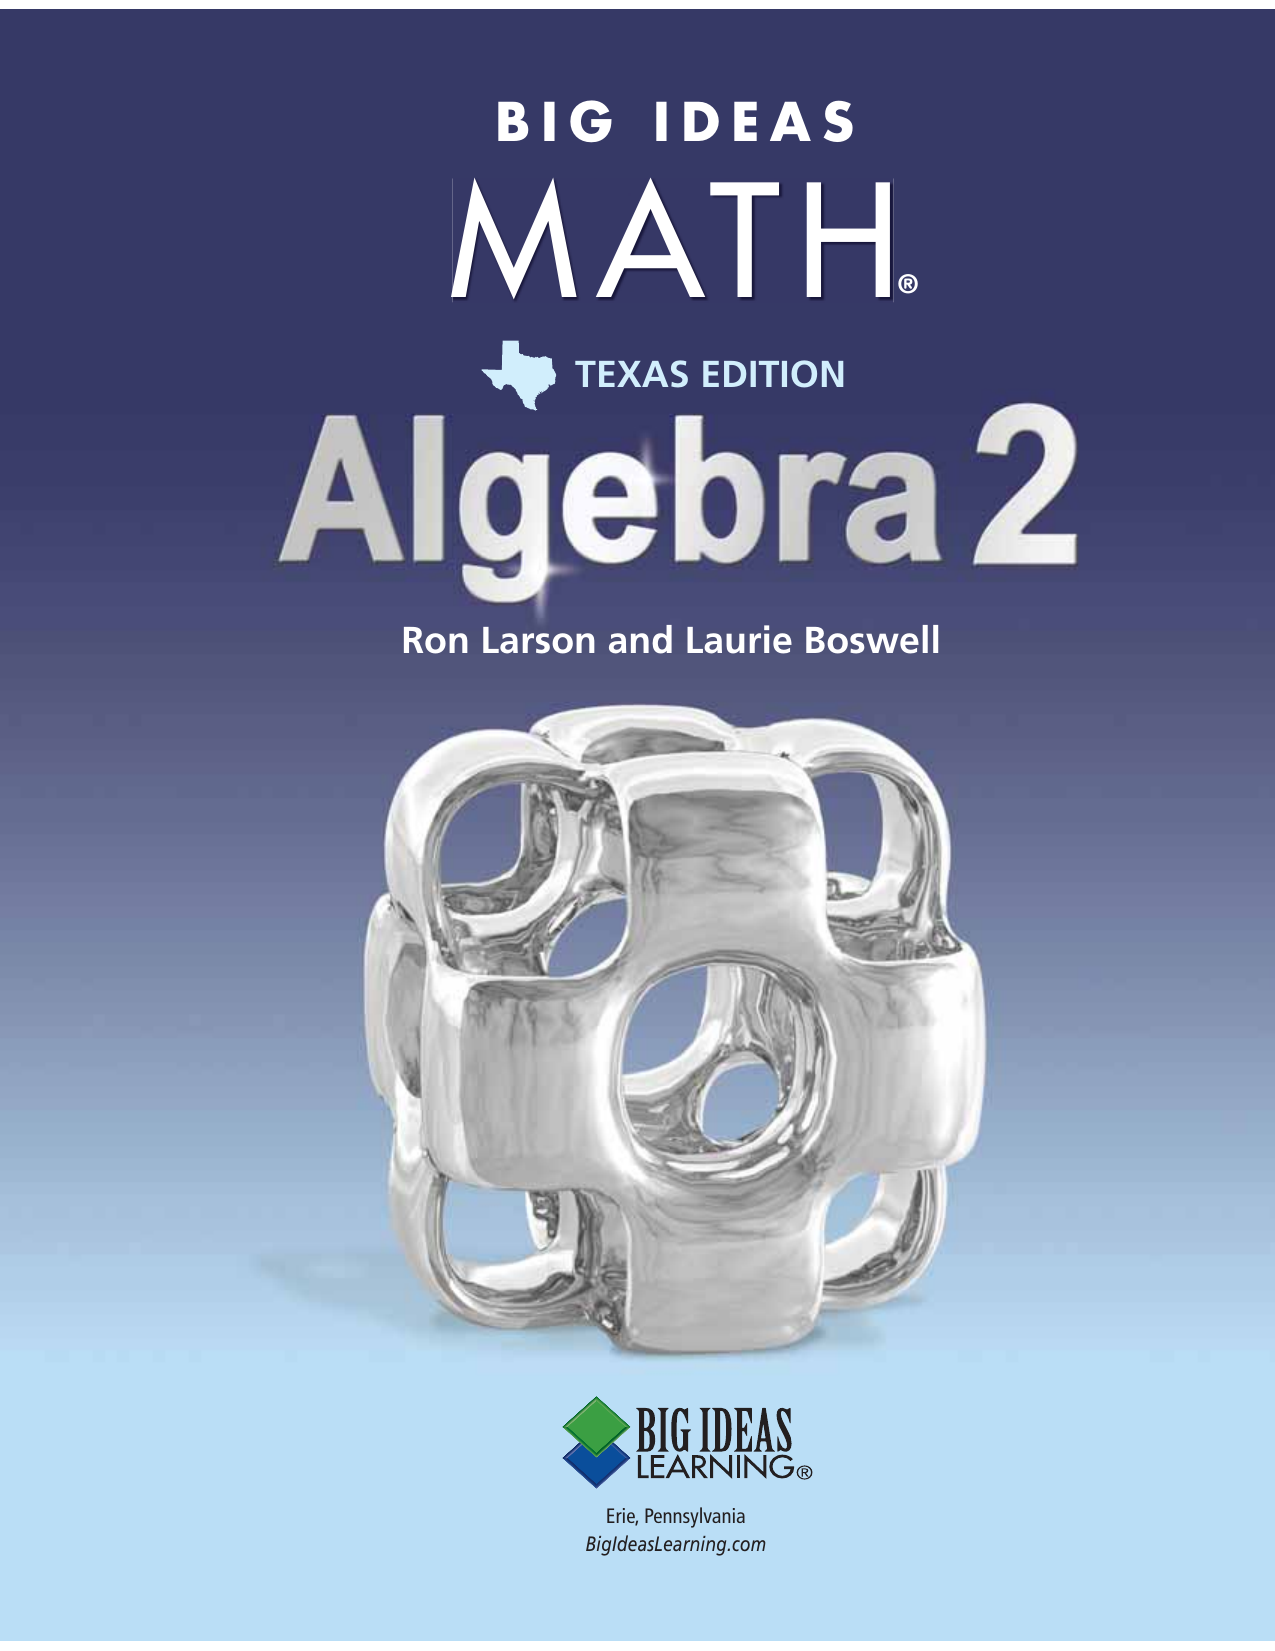 Big Ideas Math Algebra 1 Topics